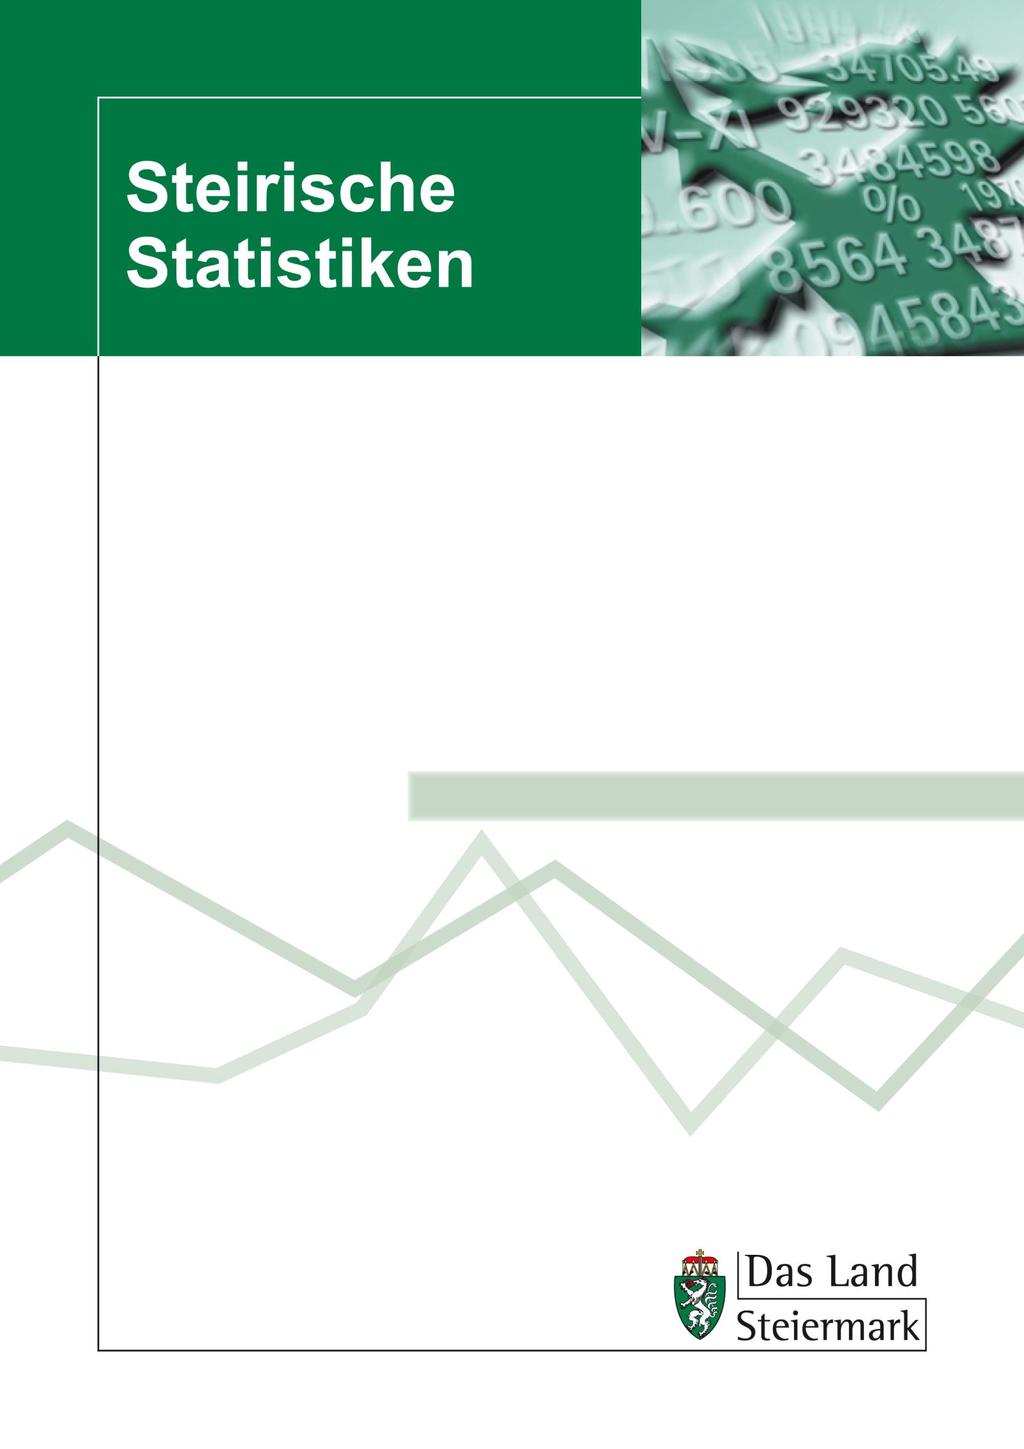 Steiermark - Wirtschaft und Konjunktur 2013/2014 Heft 8/2015 Abteilung 17 Landes- und